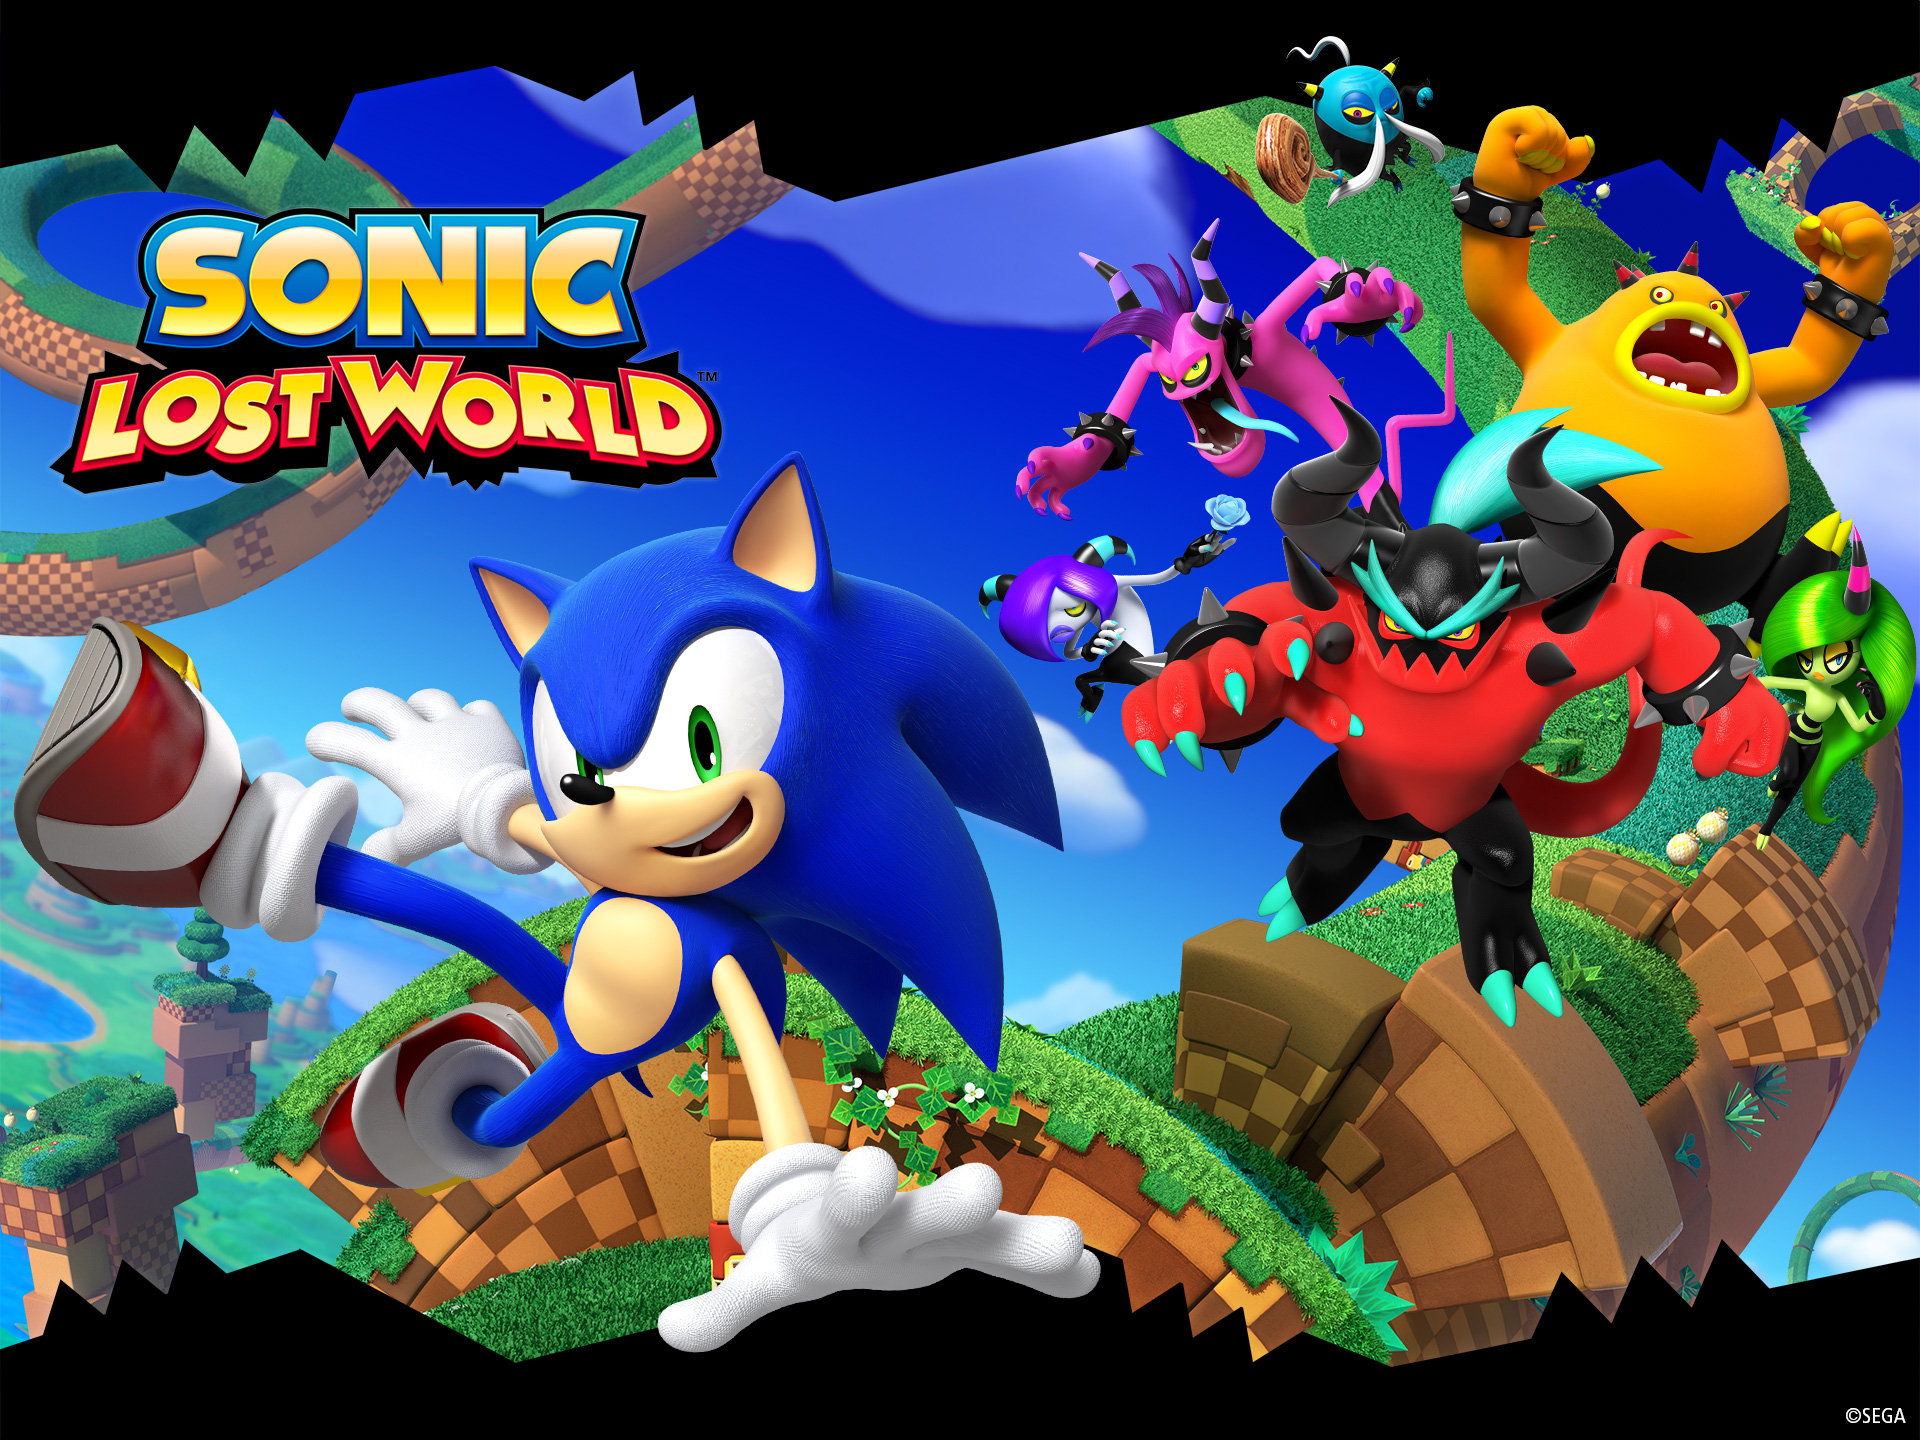 Sonic Lost World: Trò chơi Sonic Lost World sẽ làm bạn say mê bởi những đường đua tuyệt vời và những thử thách đầy kịch tính. Với Sonic, bạn sẽ điểm tên trên những hành tinh khác nhau và tham gia vào các cuộc chiến đầy gay cấn. Hãy chuẩn bị tinh thần và đến với Sonic Lost World ngay hôm nay!